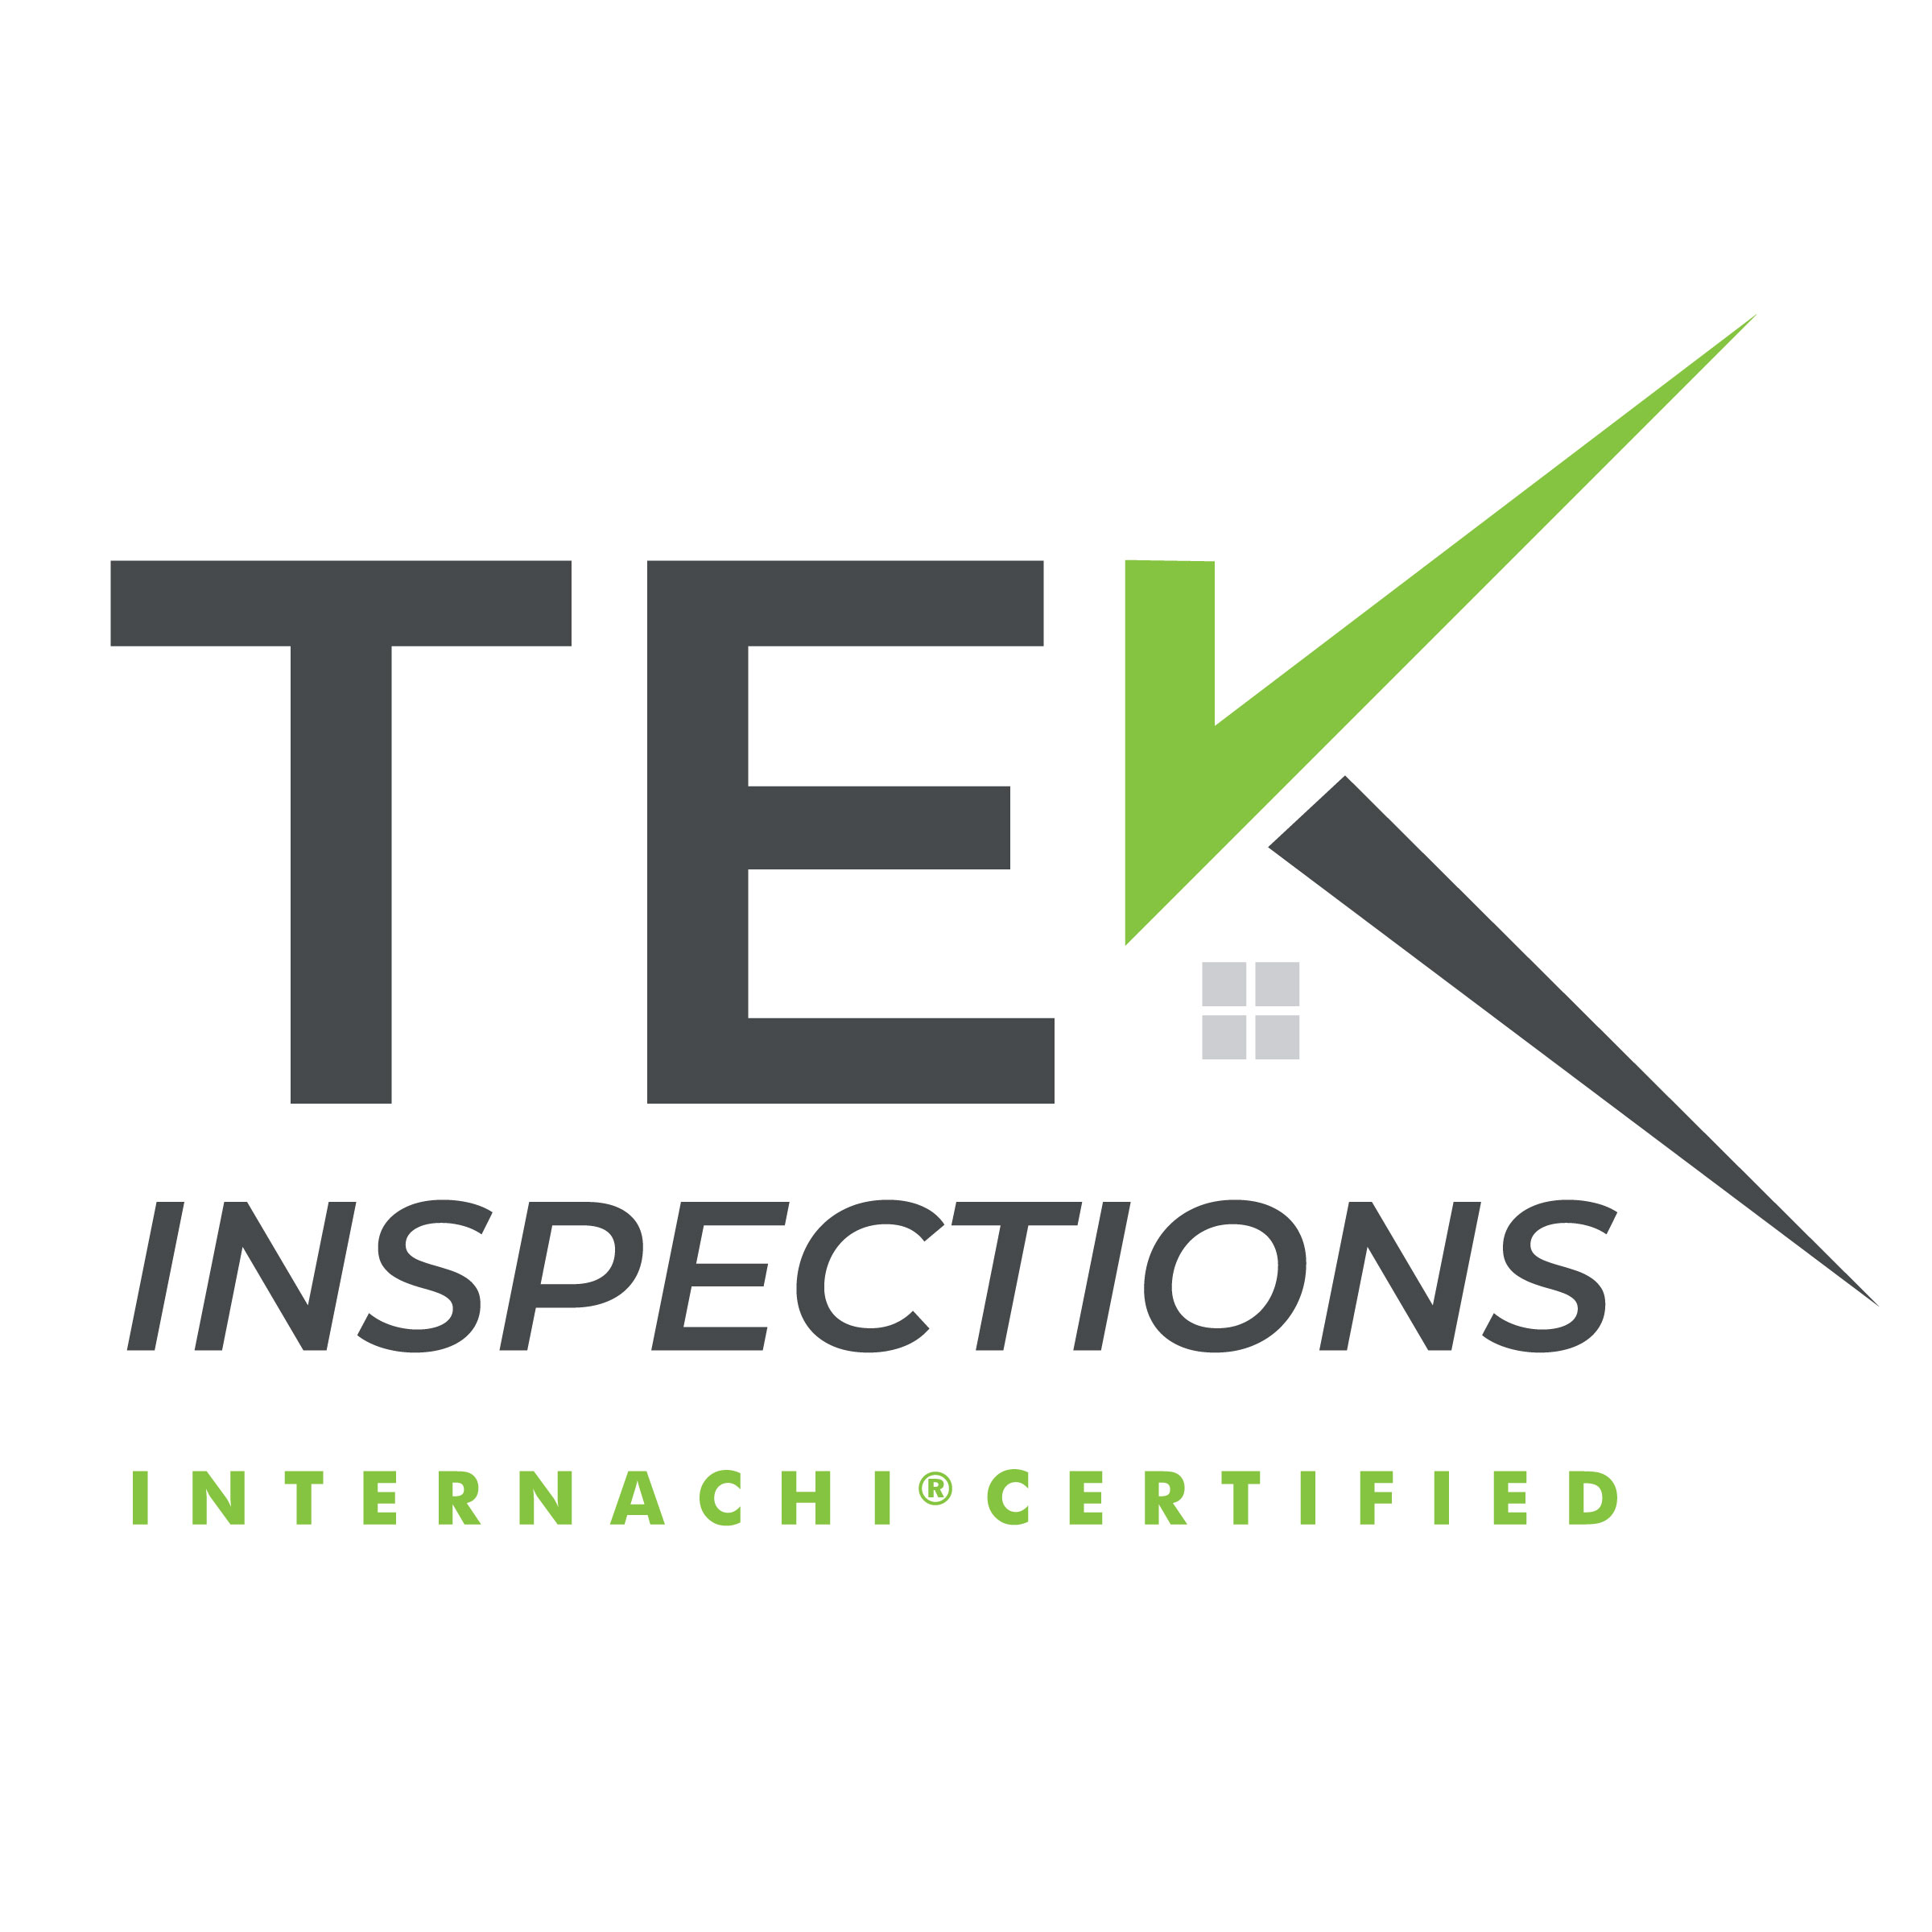 TEK Inspections Logo